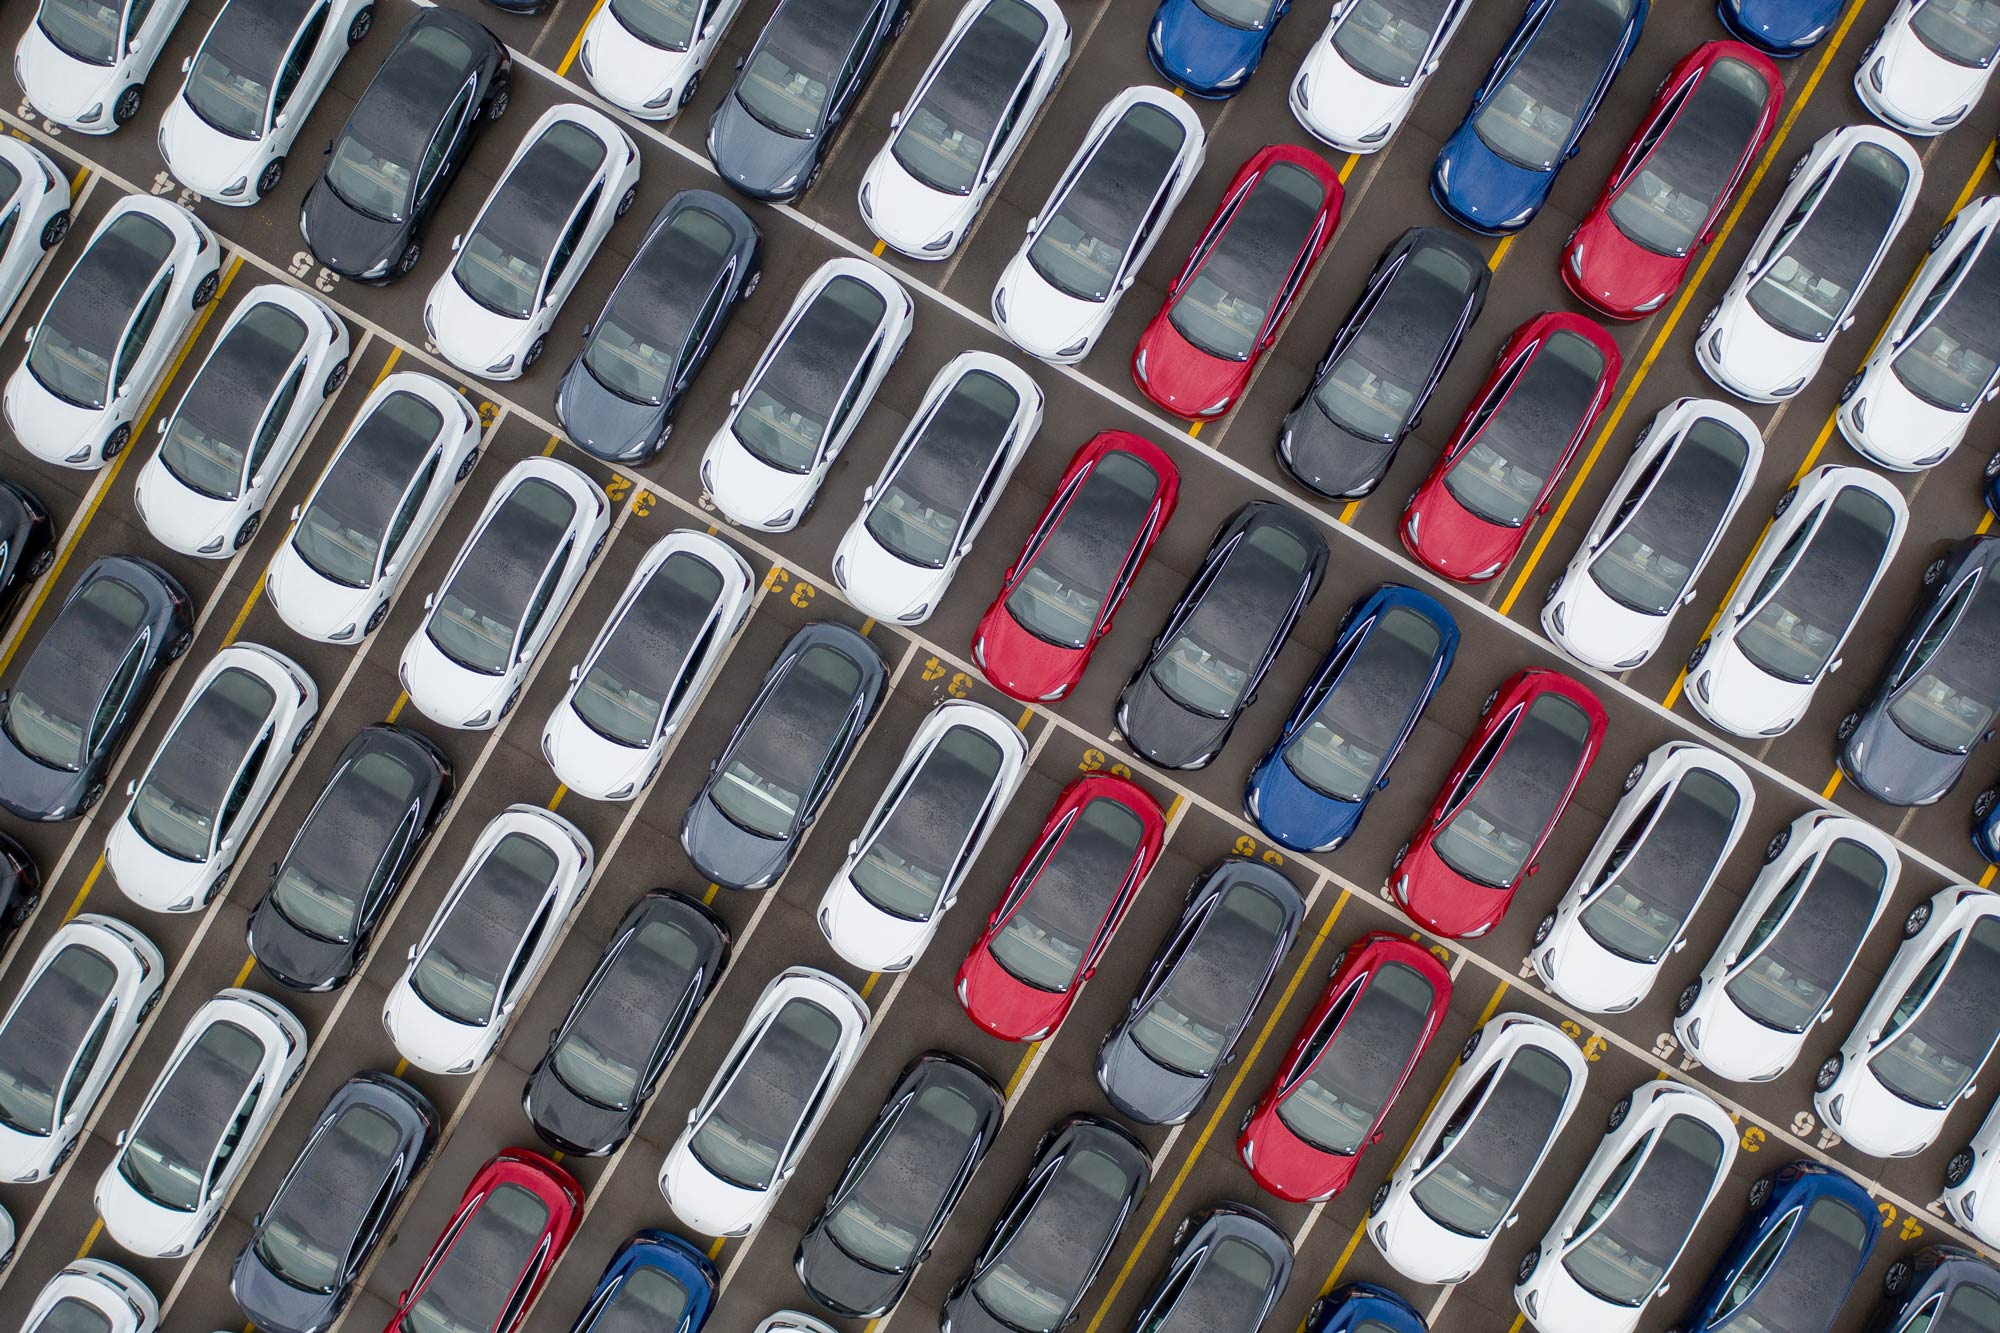 Dozens of Teslas in a parking lot